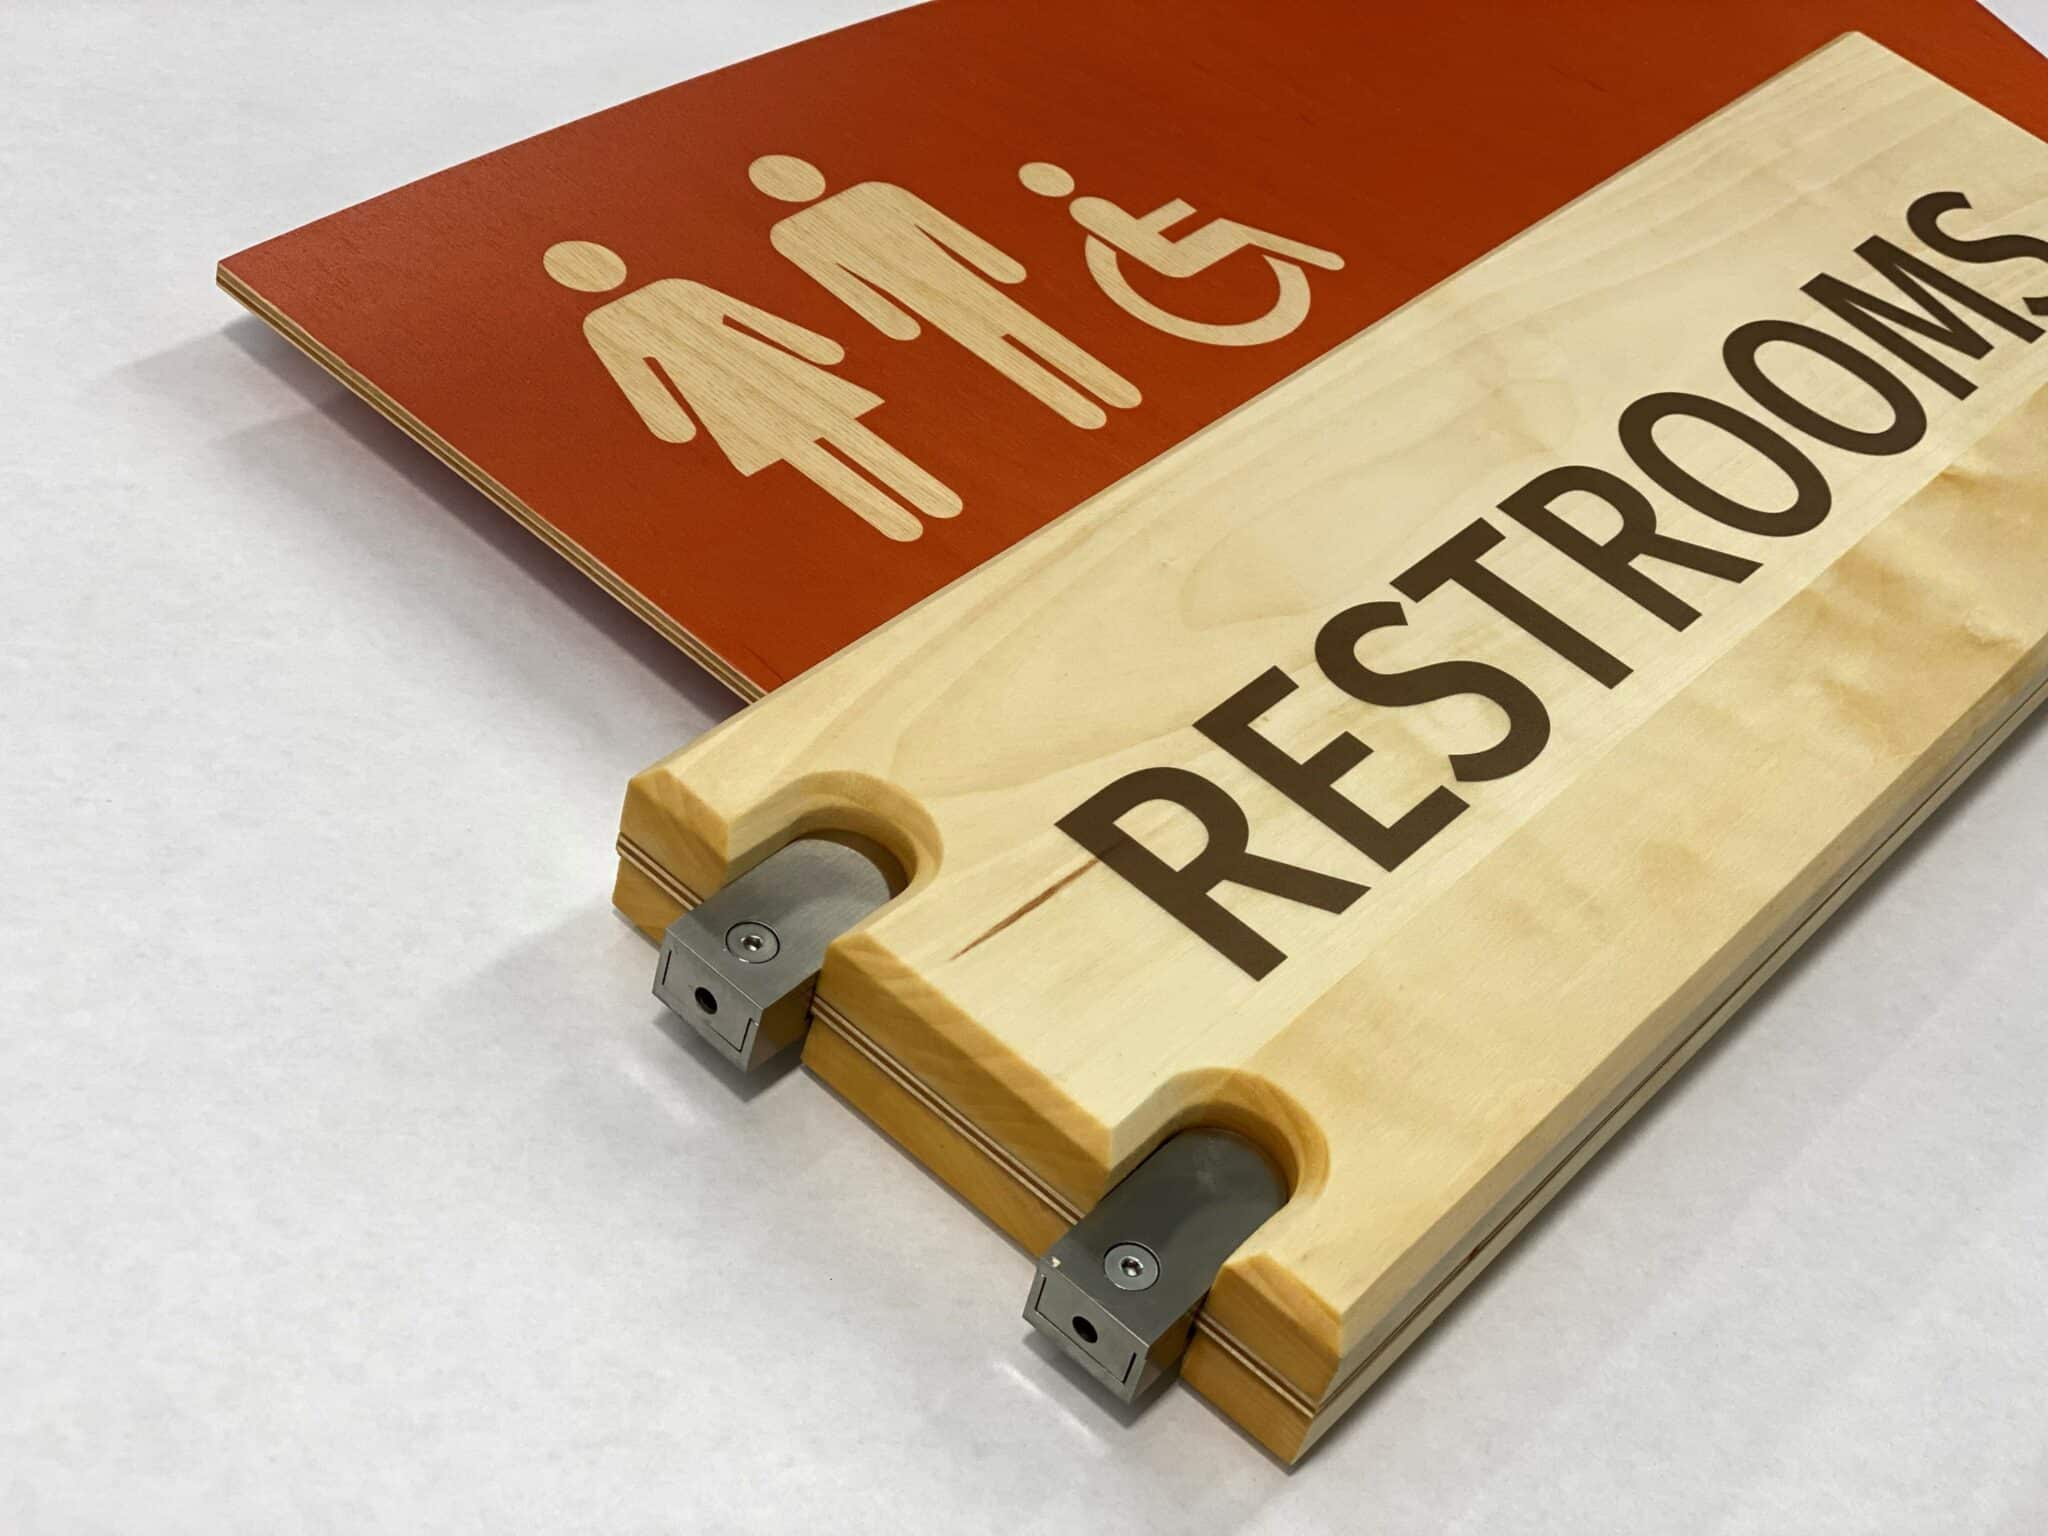 All Gender Accessible Restroom Blade Sign